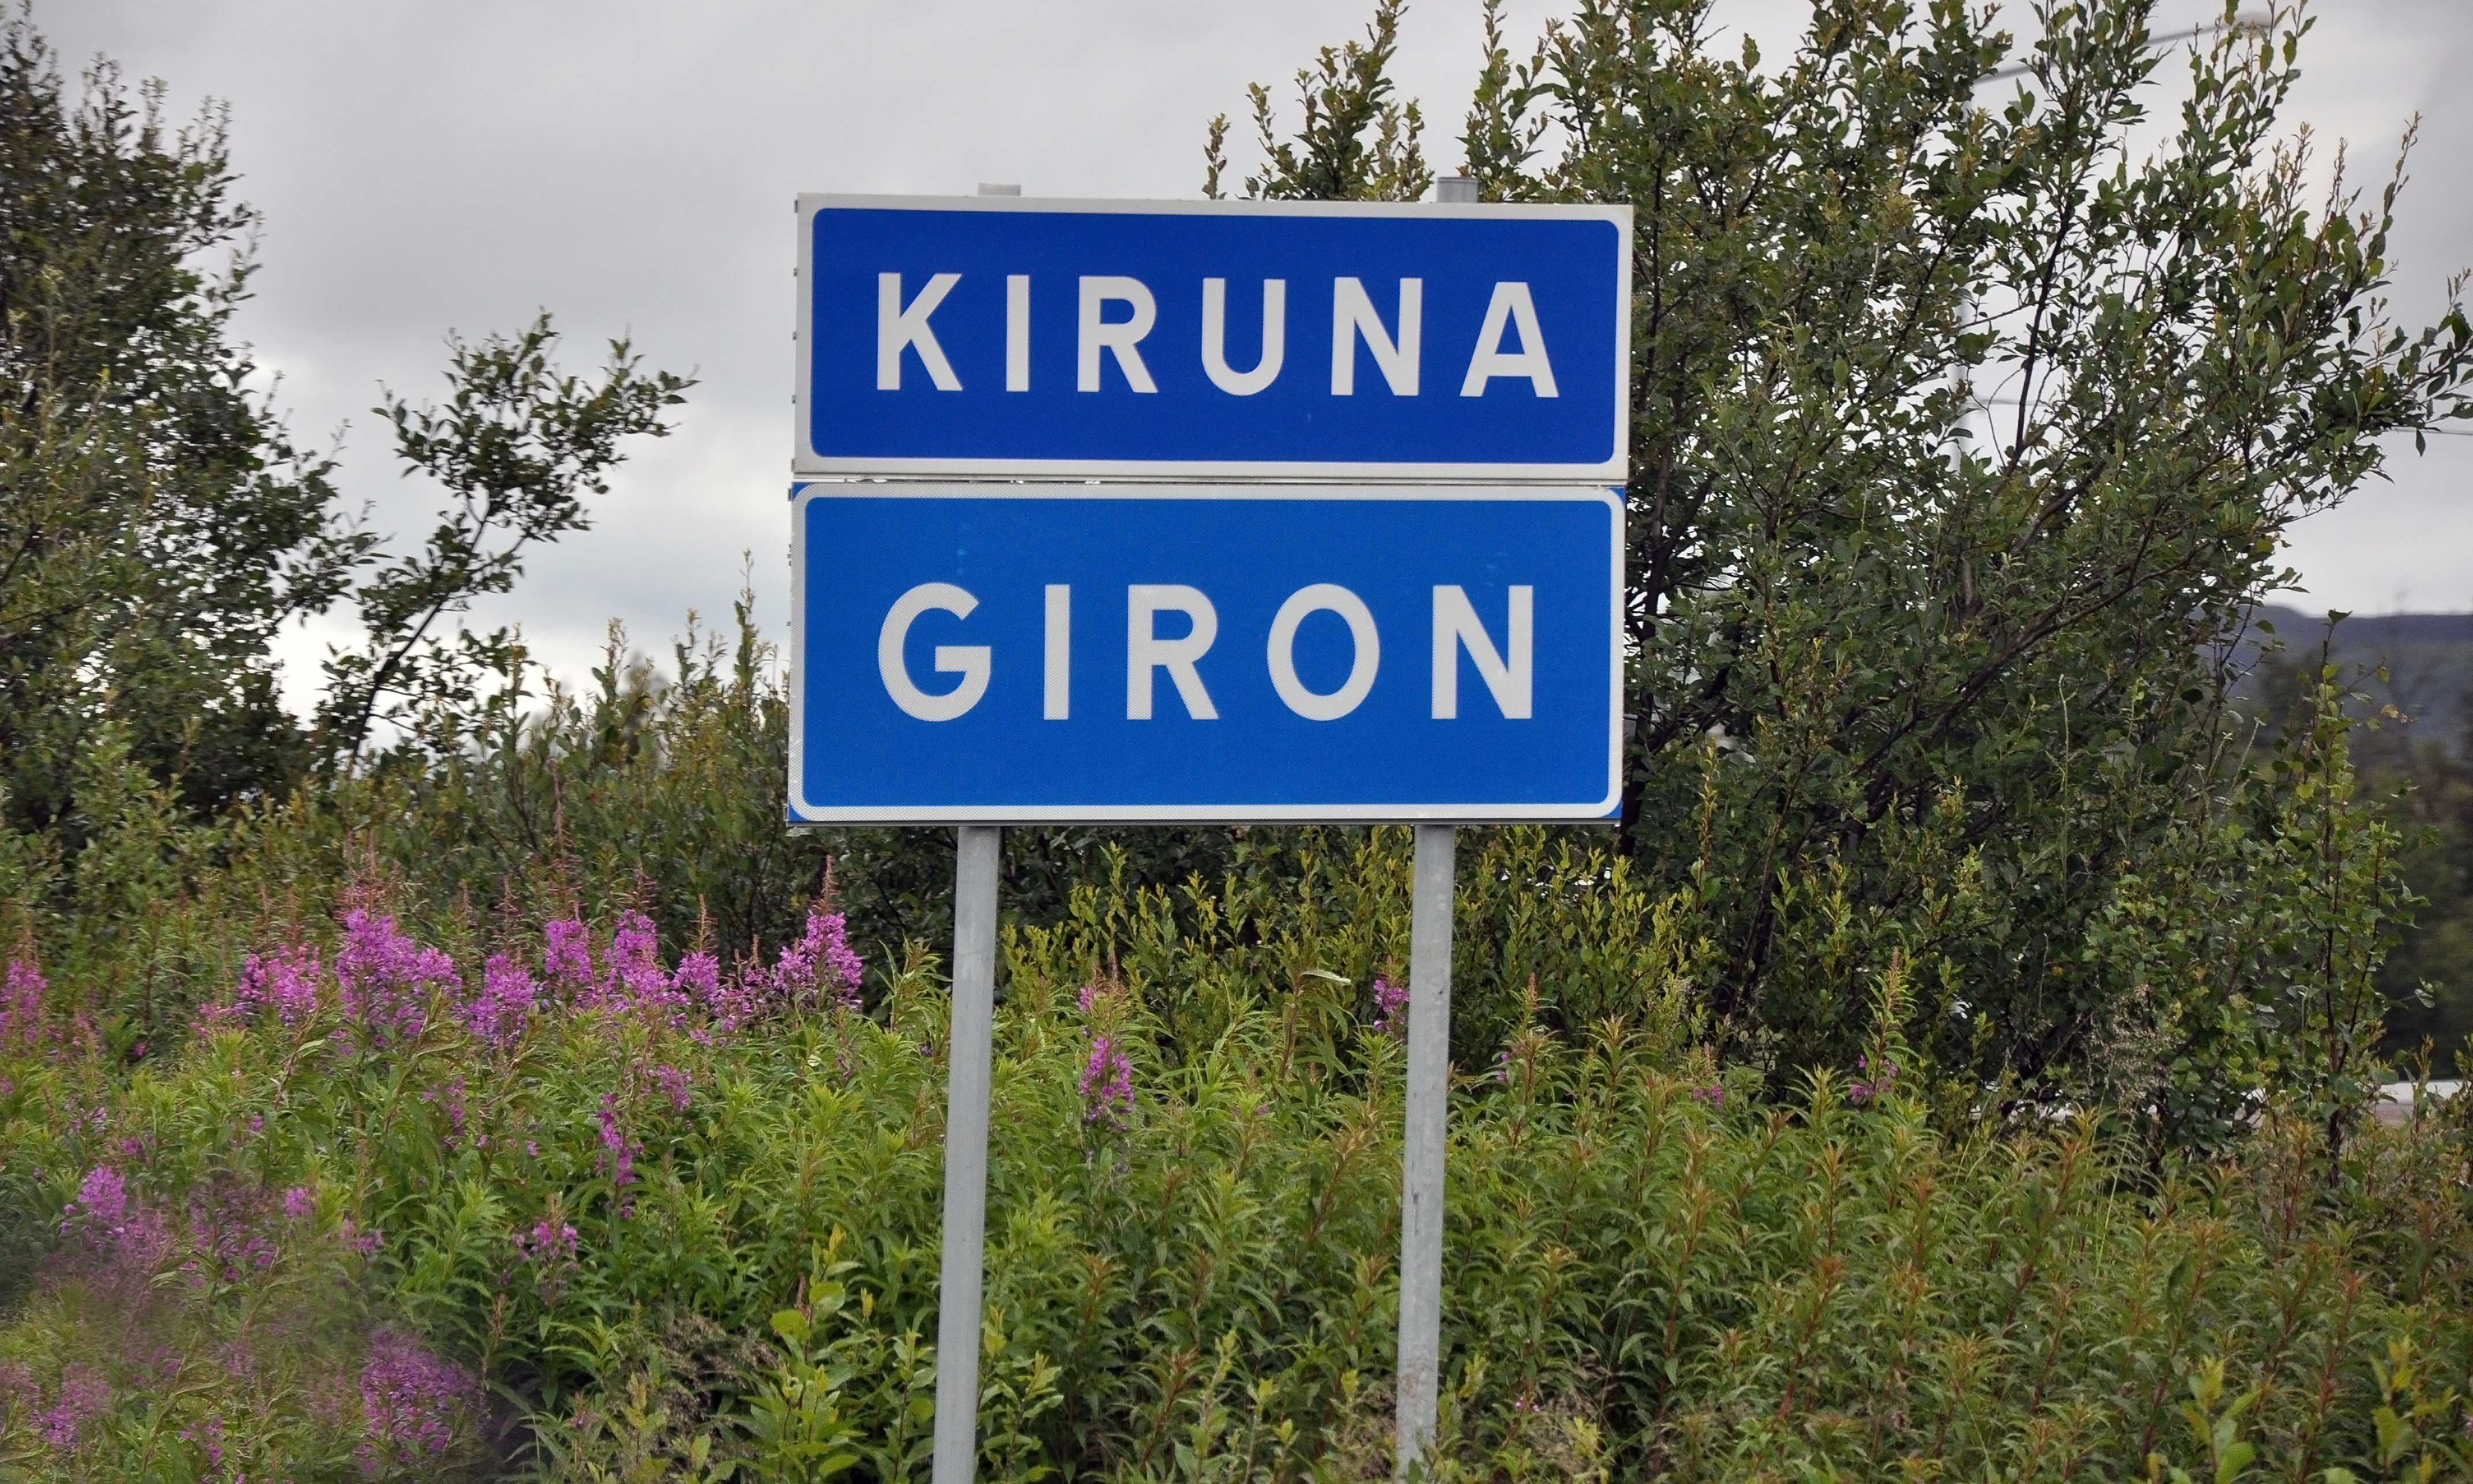 Tre myndigheter får i uppdrag att skapa arbeten i Kiruna. I det så kallade Kirunapaketet ingår utbyggnad av Lantmäteriet och Skatteverket samt ett nytt kontor för Statens servicecenter.